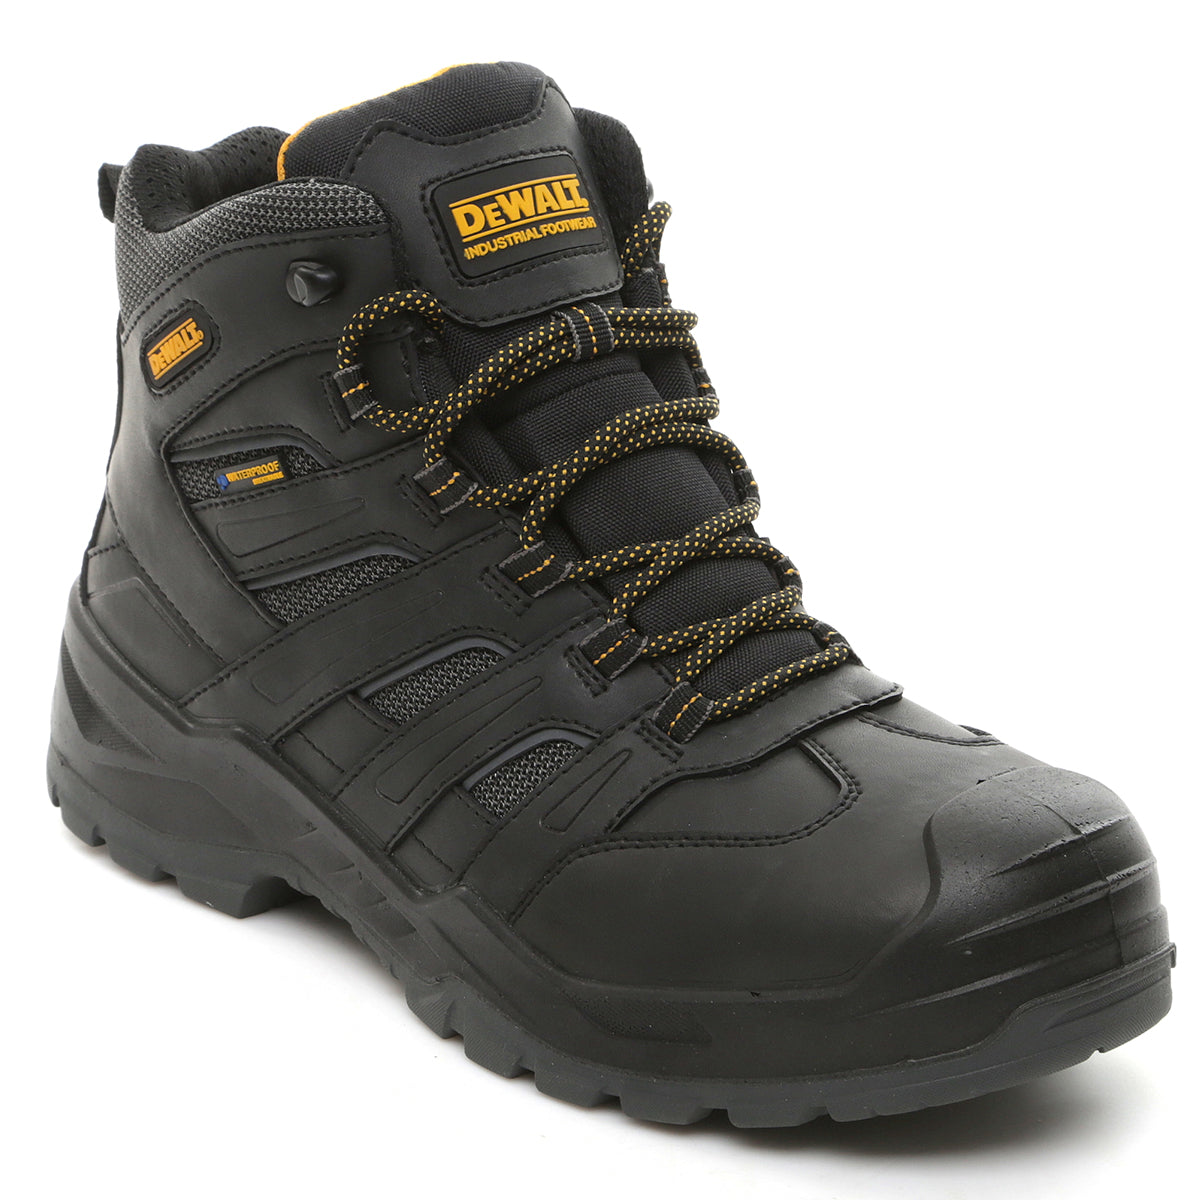 DeWalt Murray - Black Waterproof Safety Boot